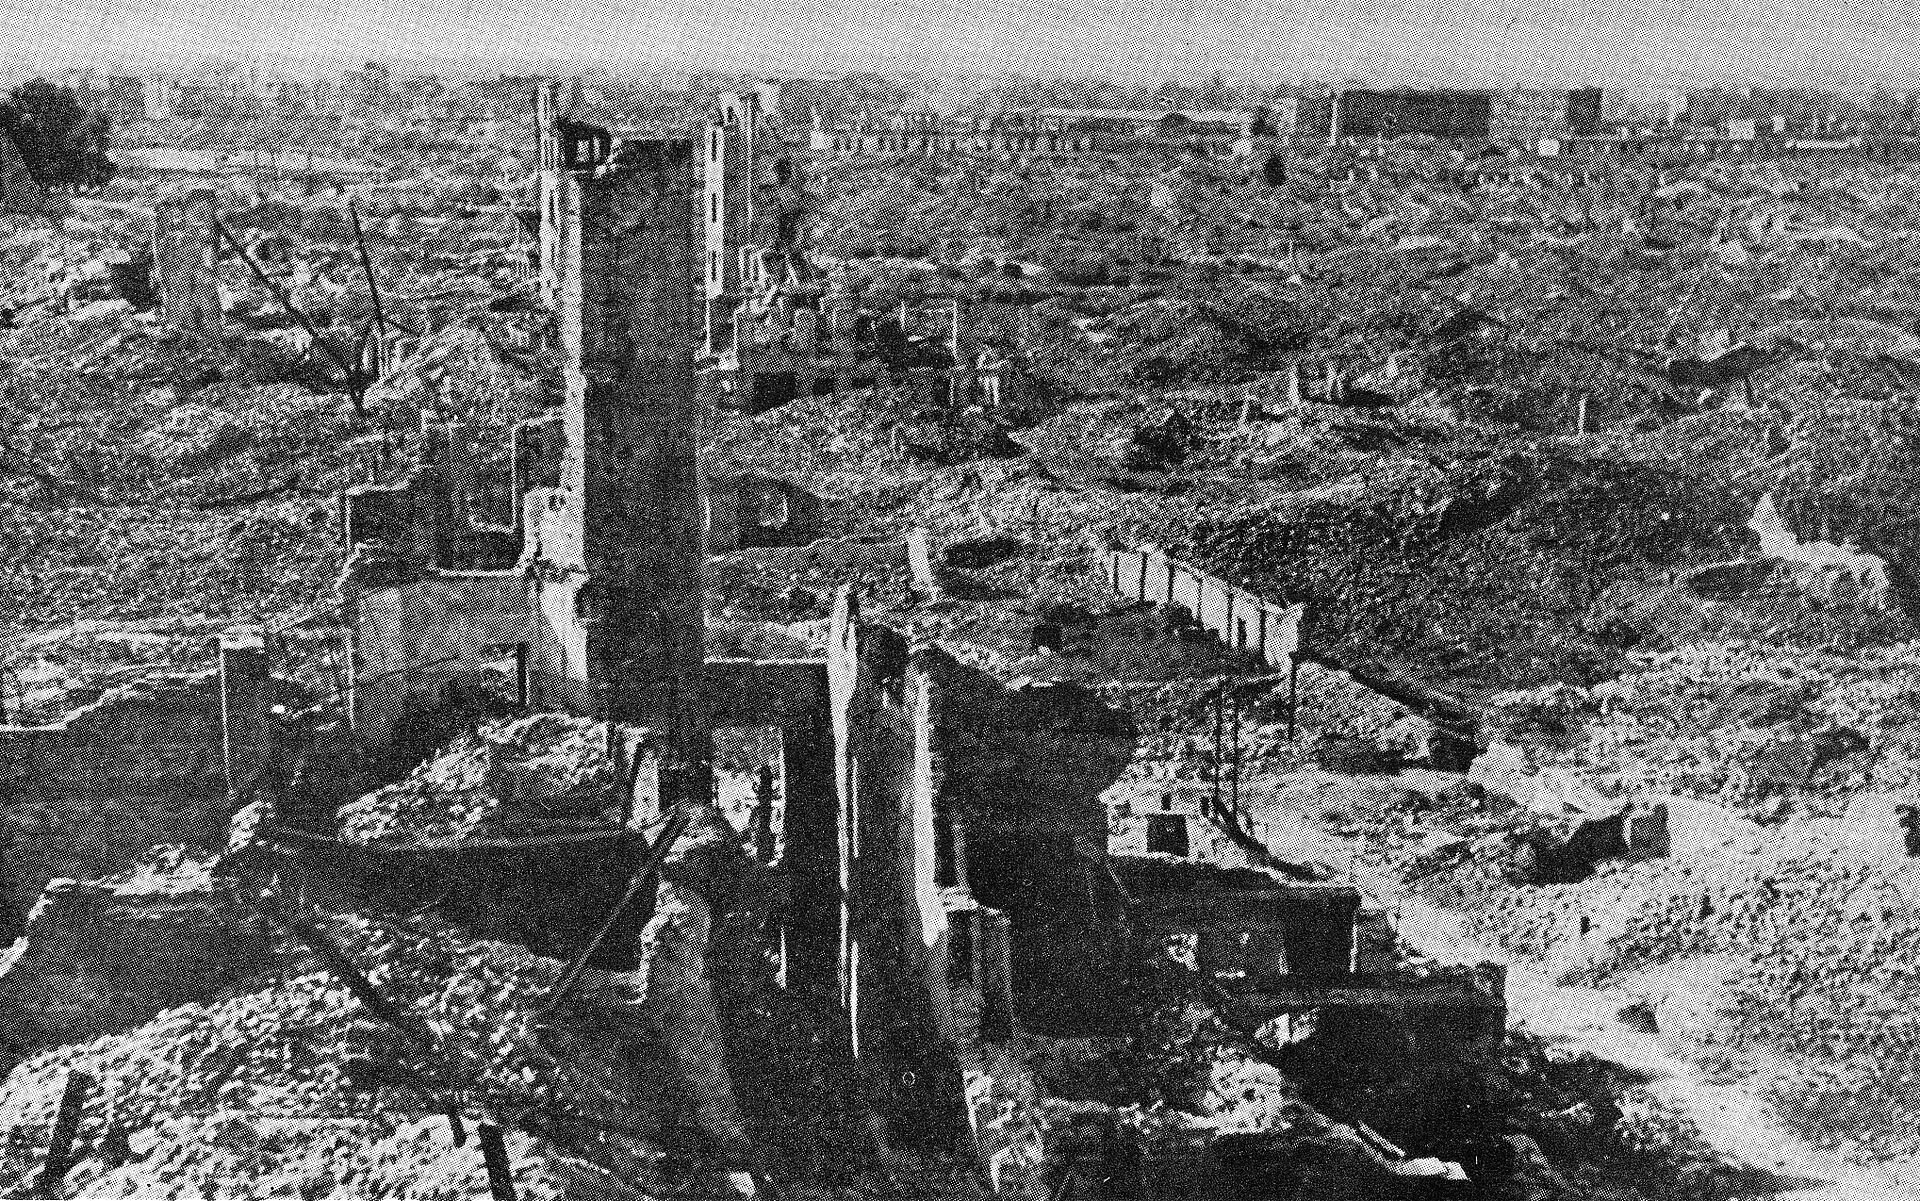 Czarno‑biała fotografia przedstawia ruiny warszawskiego getta. Gdzieniegdzie znajdują się pozostałości po zbombardowanych budynkach: fragmenty ścian, otwory, w których kiedyś były okna czy drzwi. Dominującym elementem na zdjęciu jest leżący gruz.